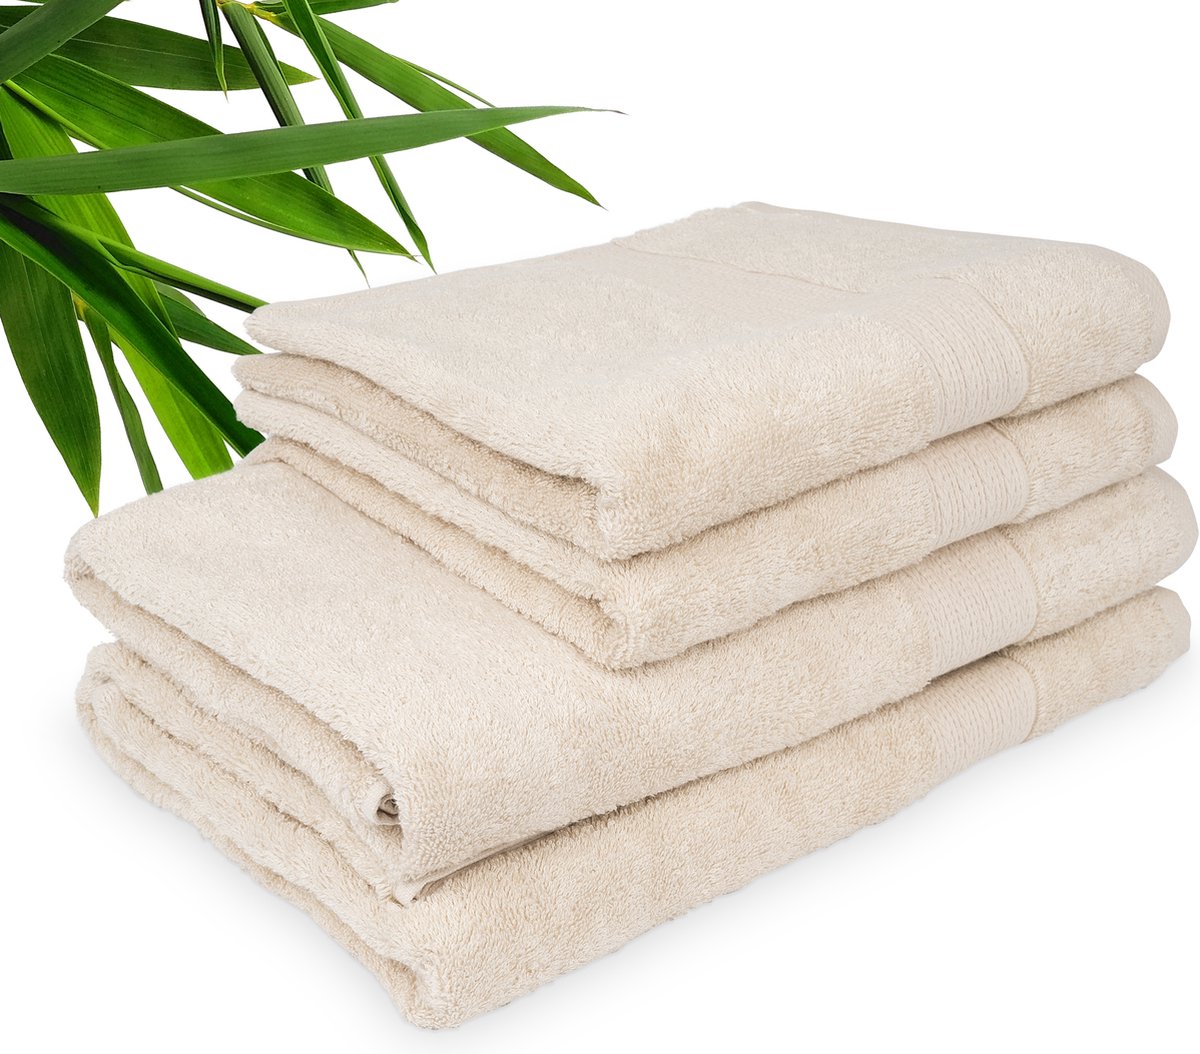 Luxdream - Badhanddoekenset 50 x 100 - Sneldrogende handdoekenset Superzacht en absorberend - Pak van 10 Handdoeken - Gemaakt van bamboe en katoen(beige)